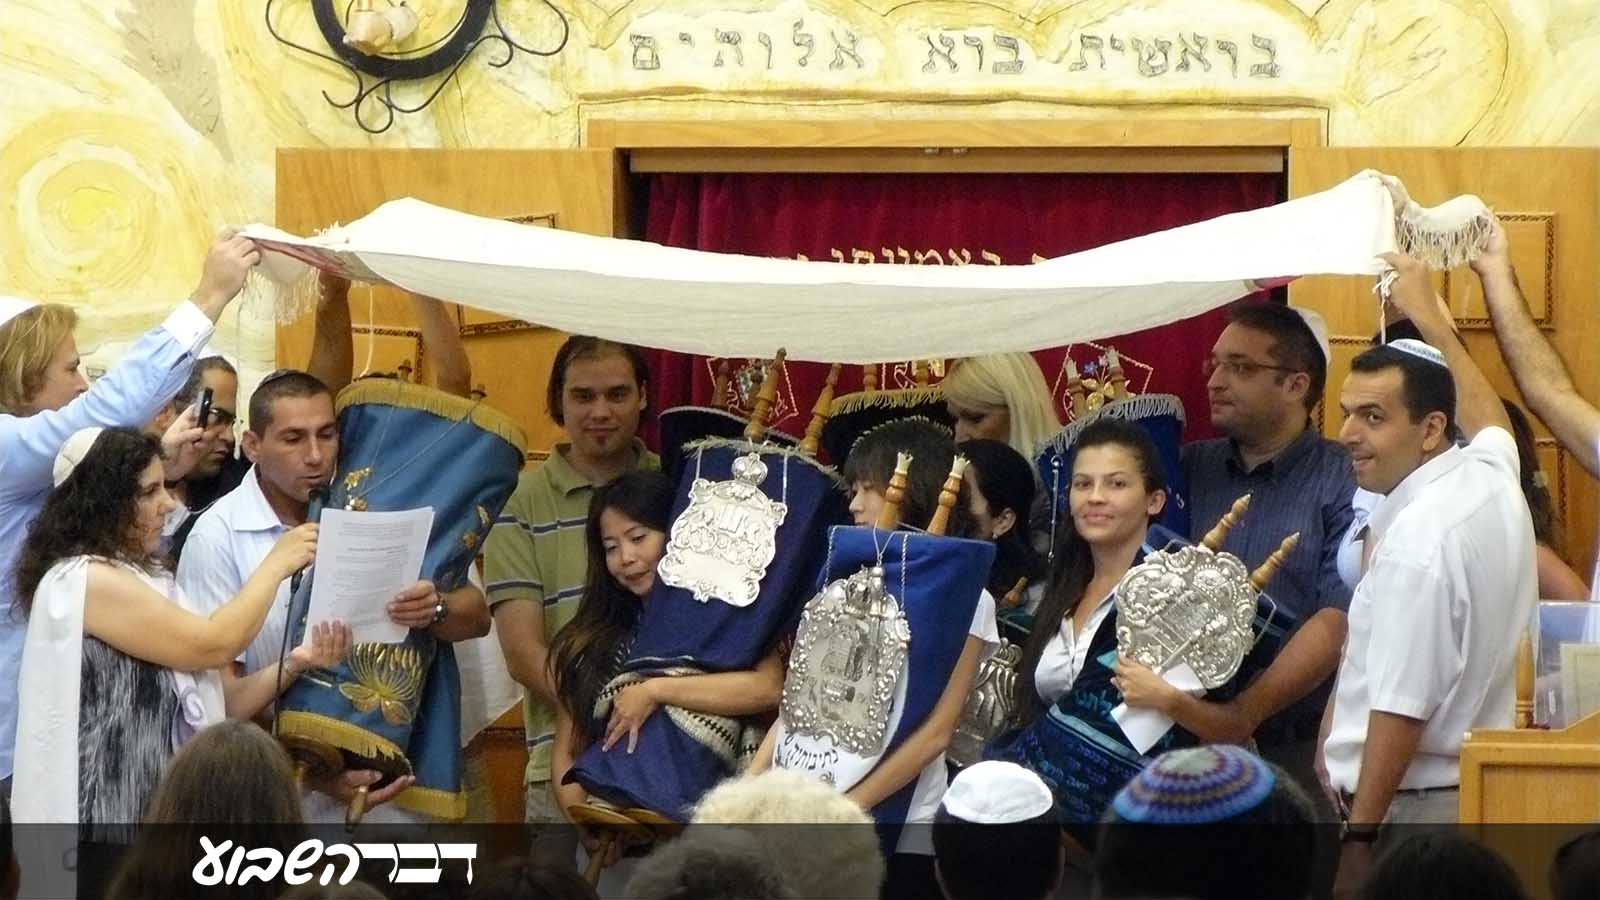 טקס סיום גיור בבית הכנסת (תמונה באדיבות המרואיינת)